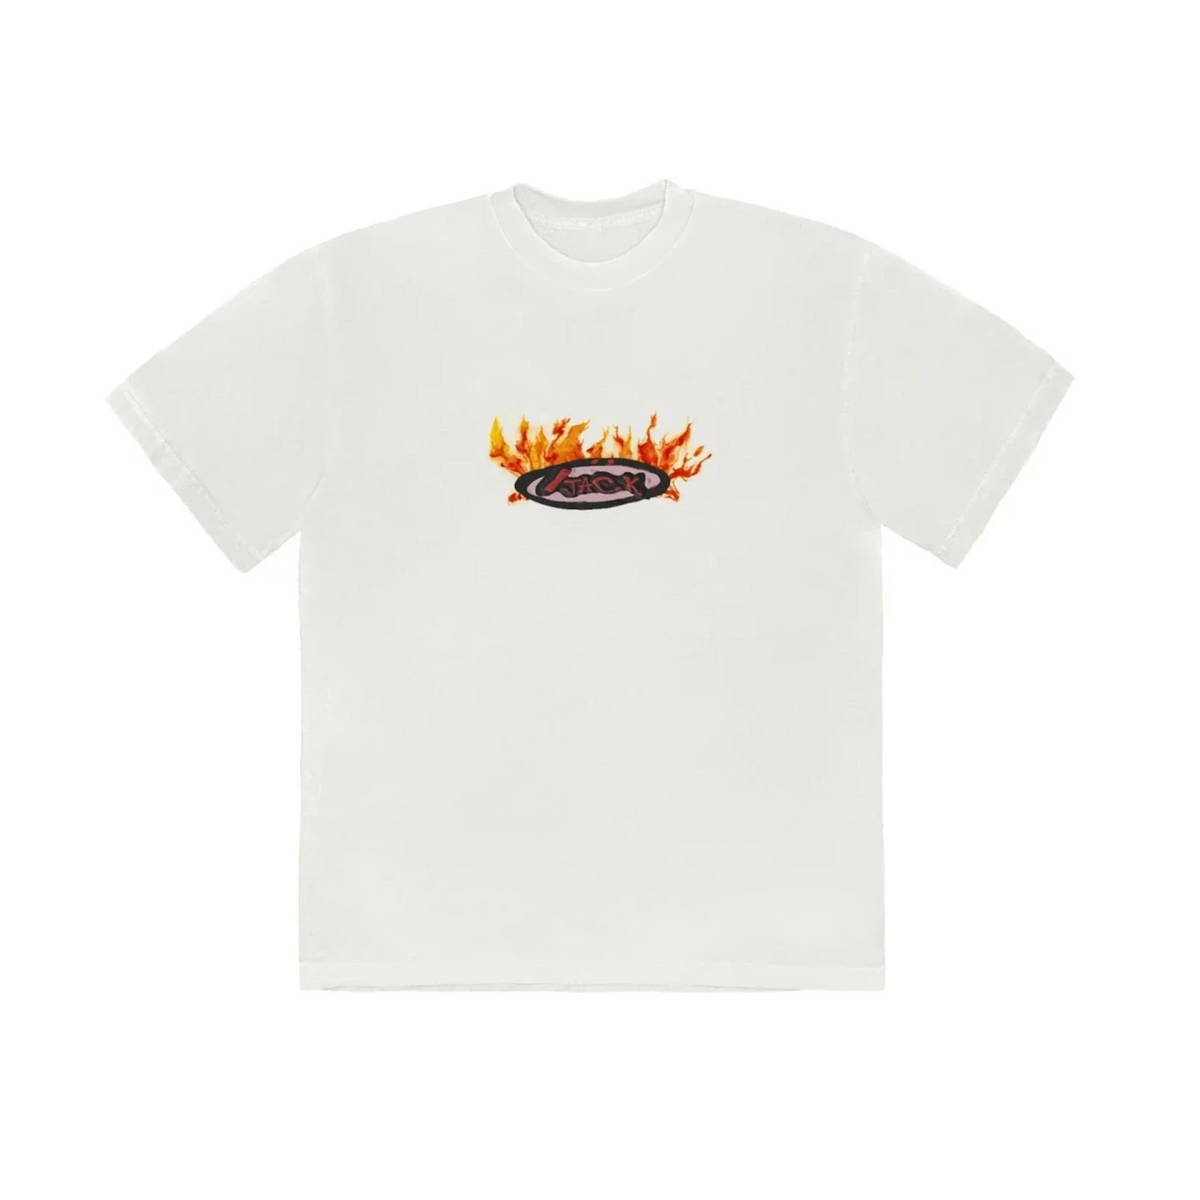 Travis Scott Cactus Jack Flame T-shirt "Cream"